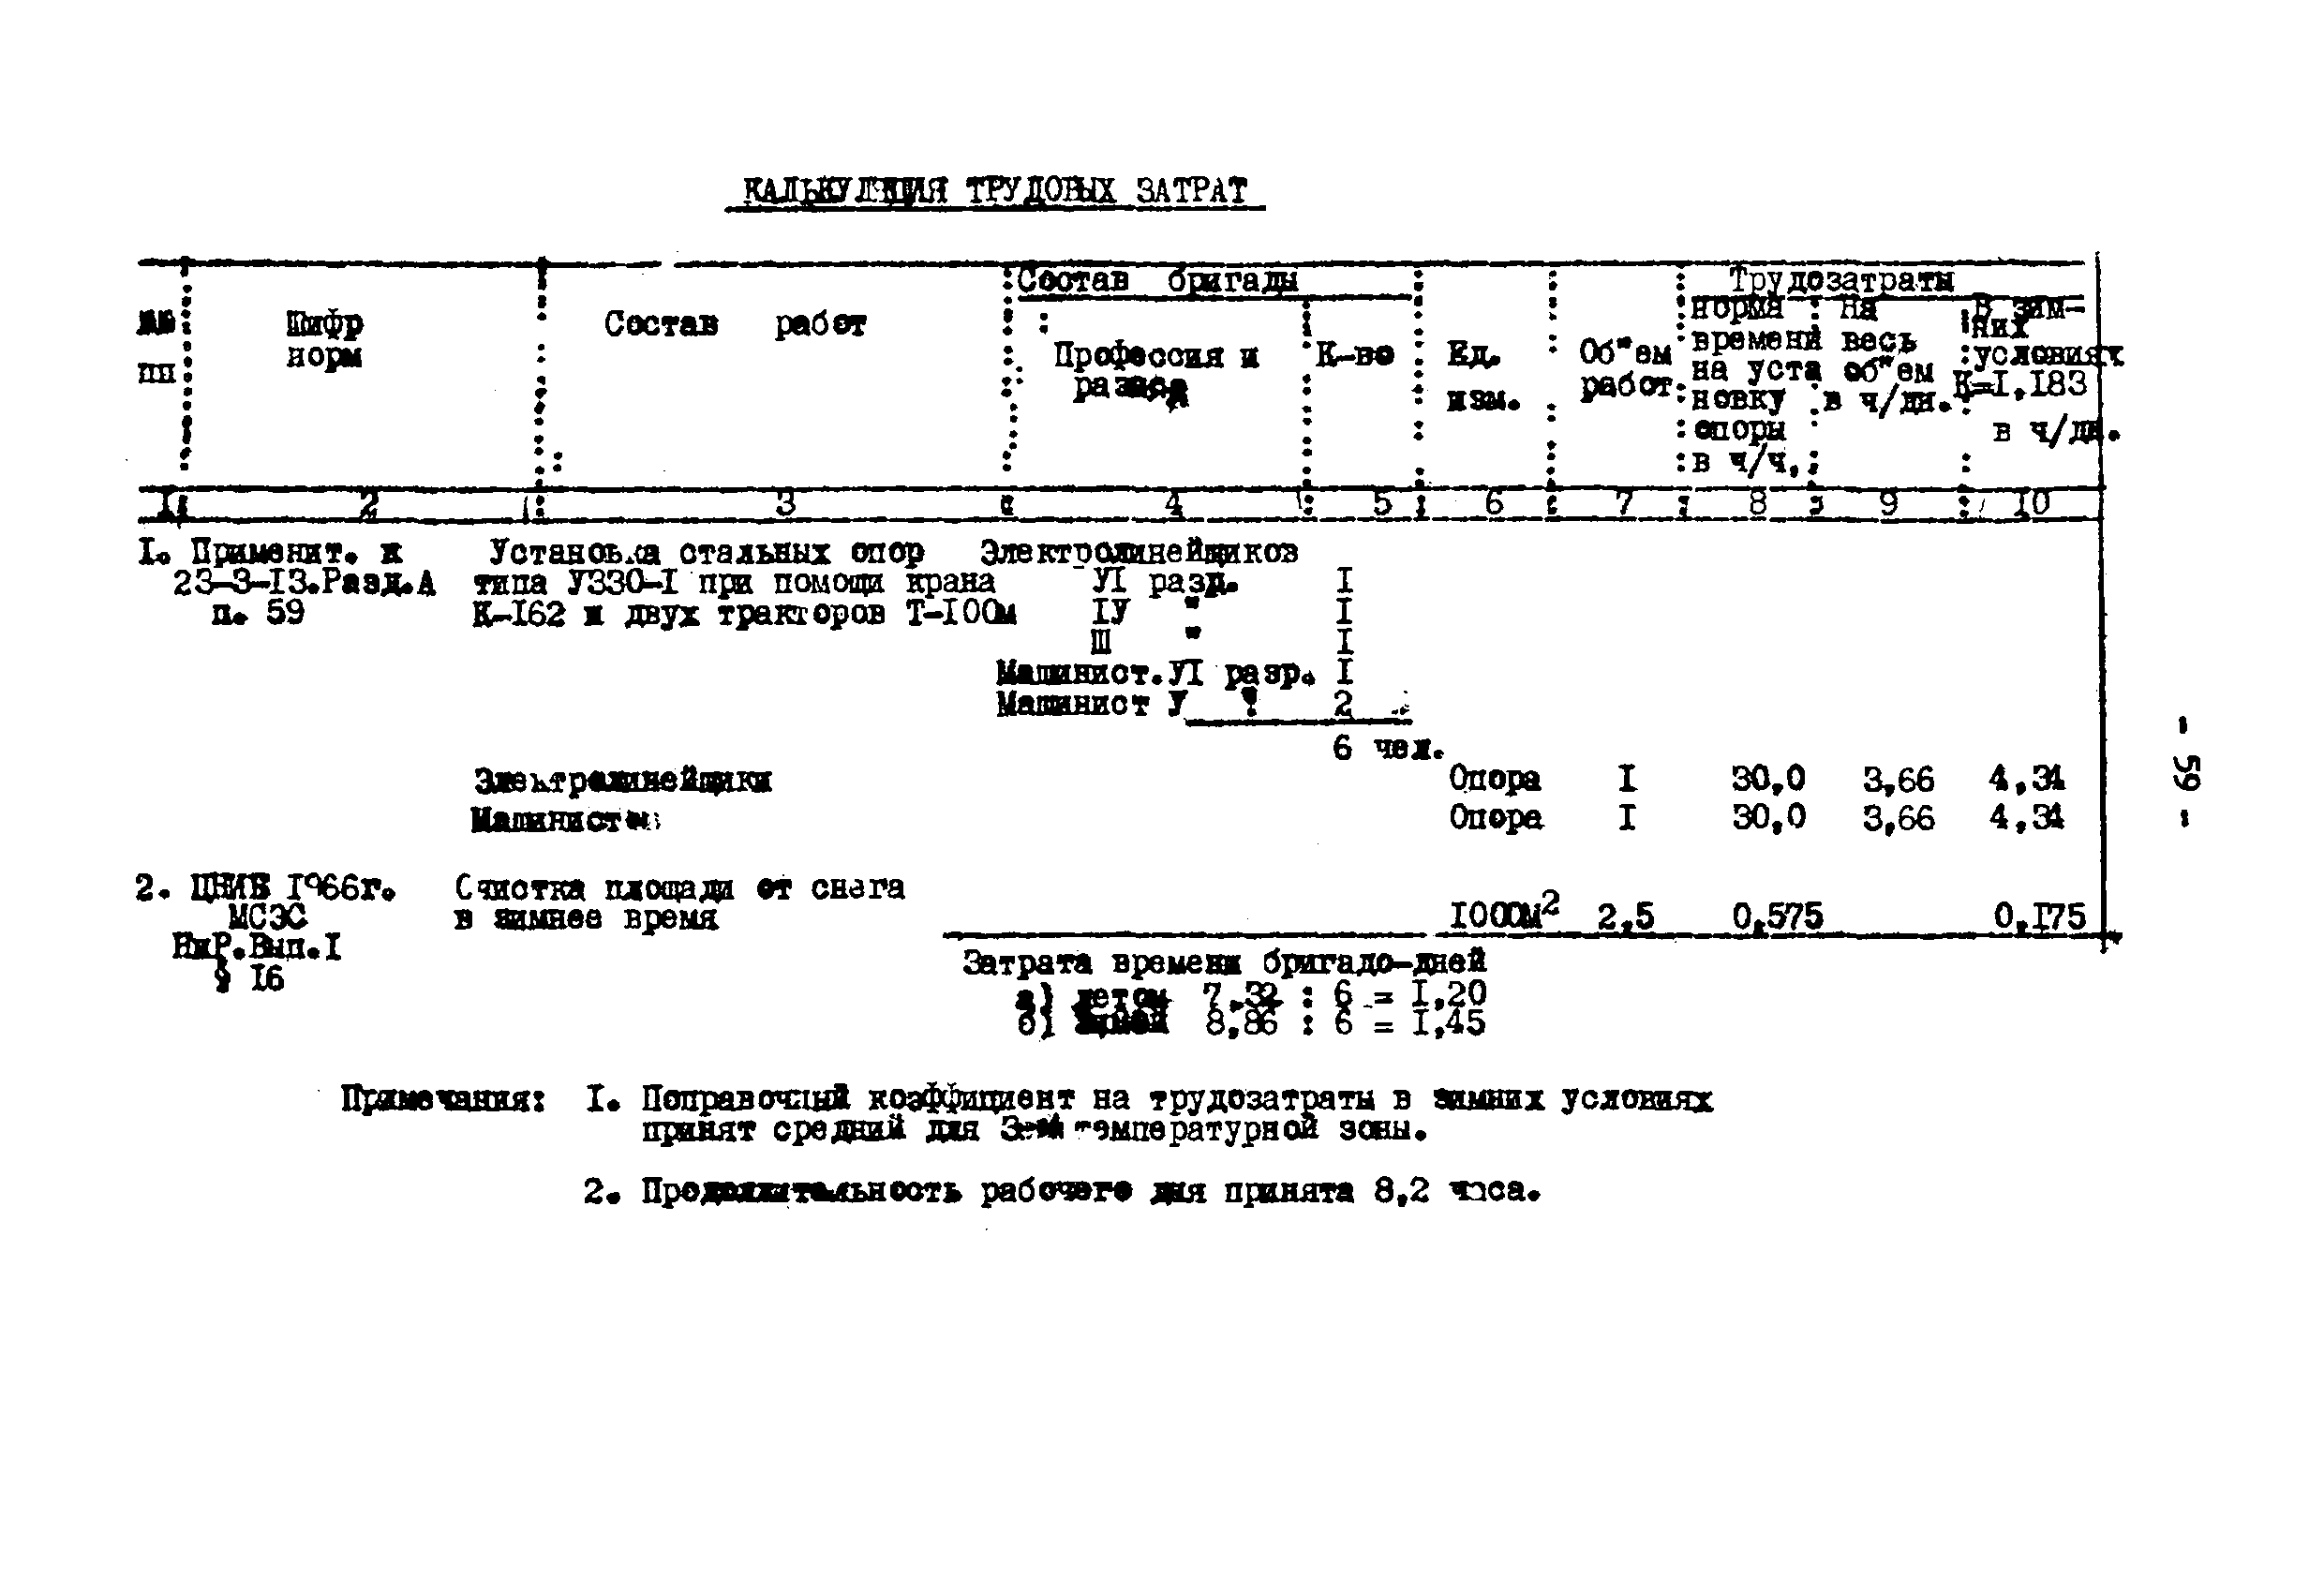 ТТК К-III-27-4